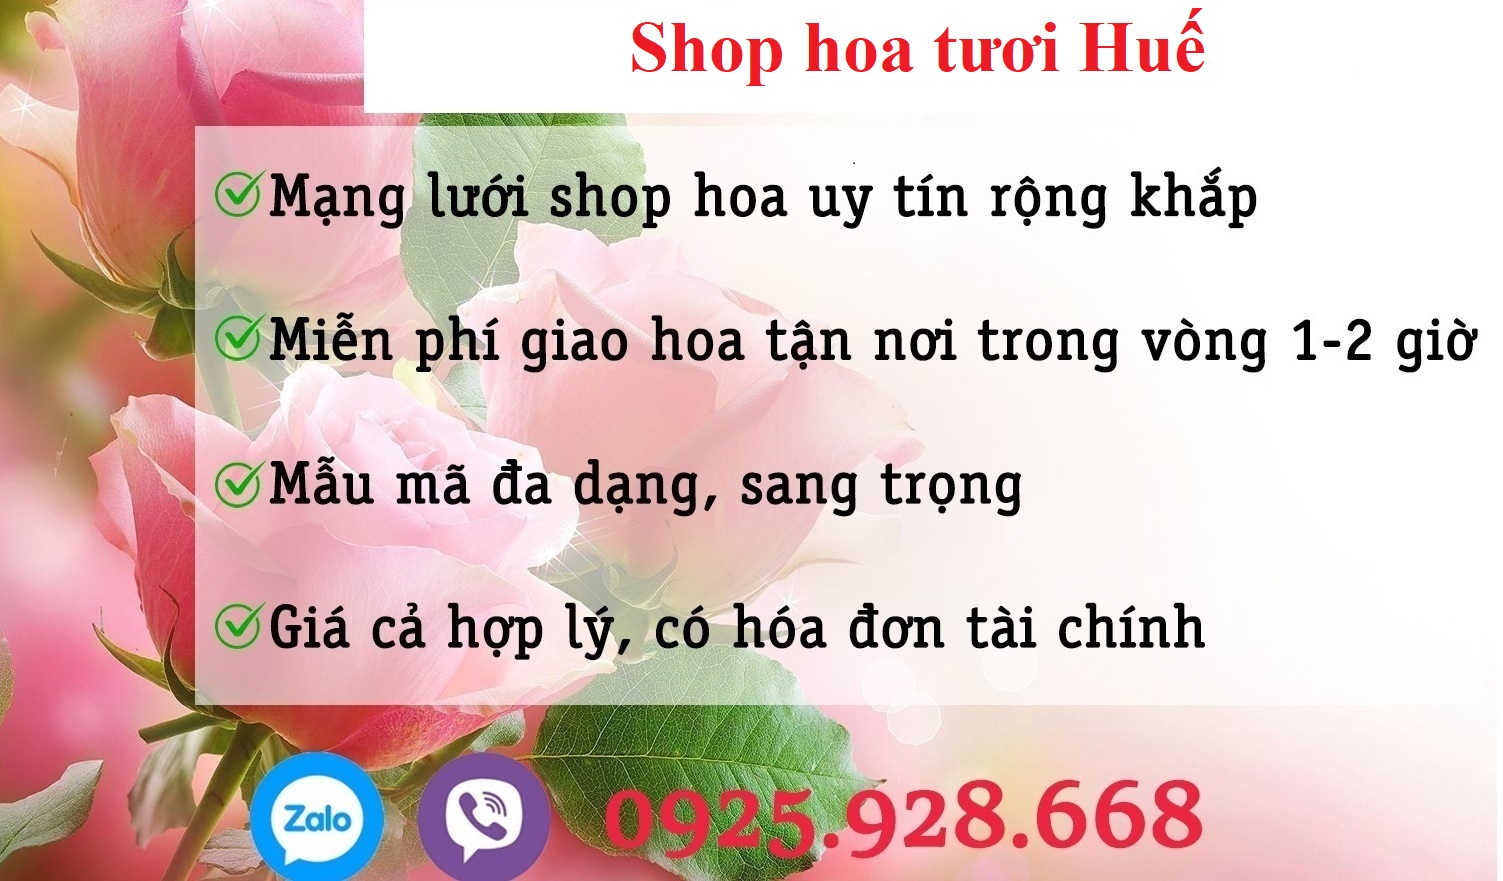 Shop hoa tại thành phố Huế